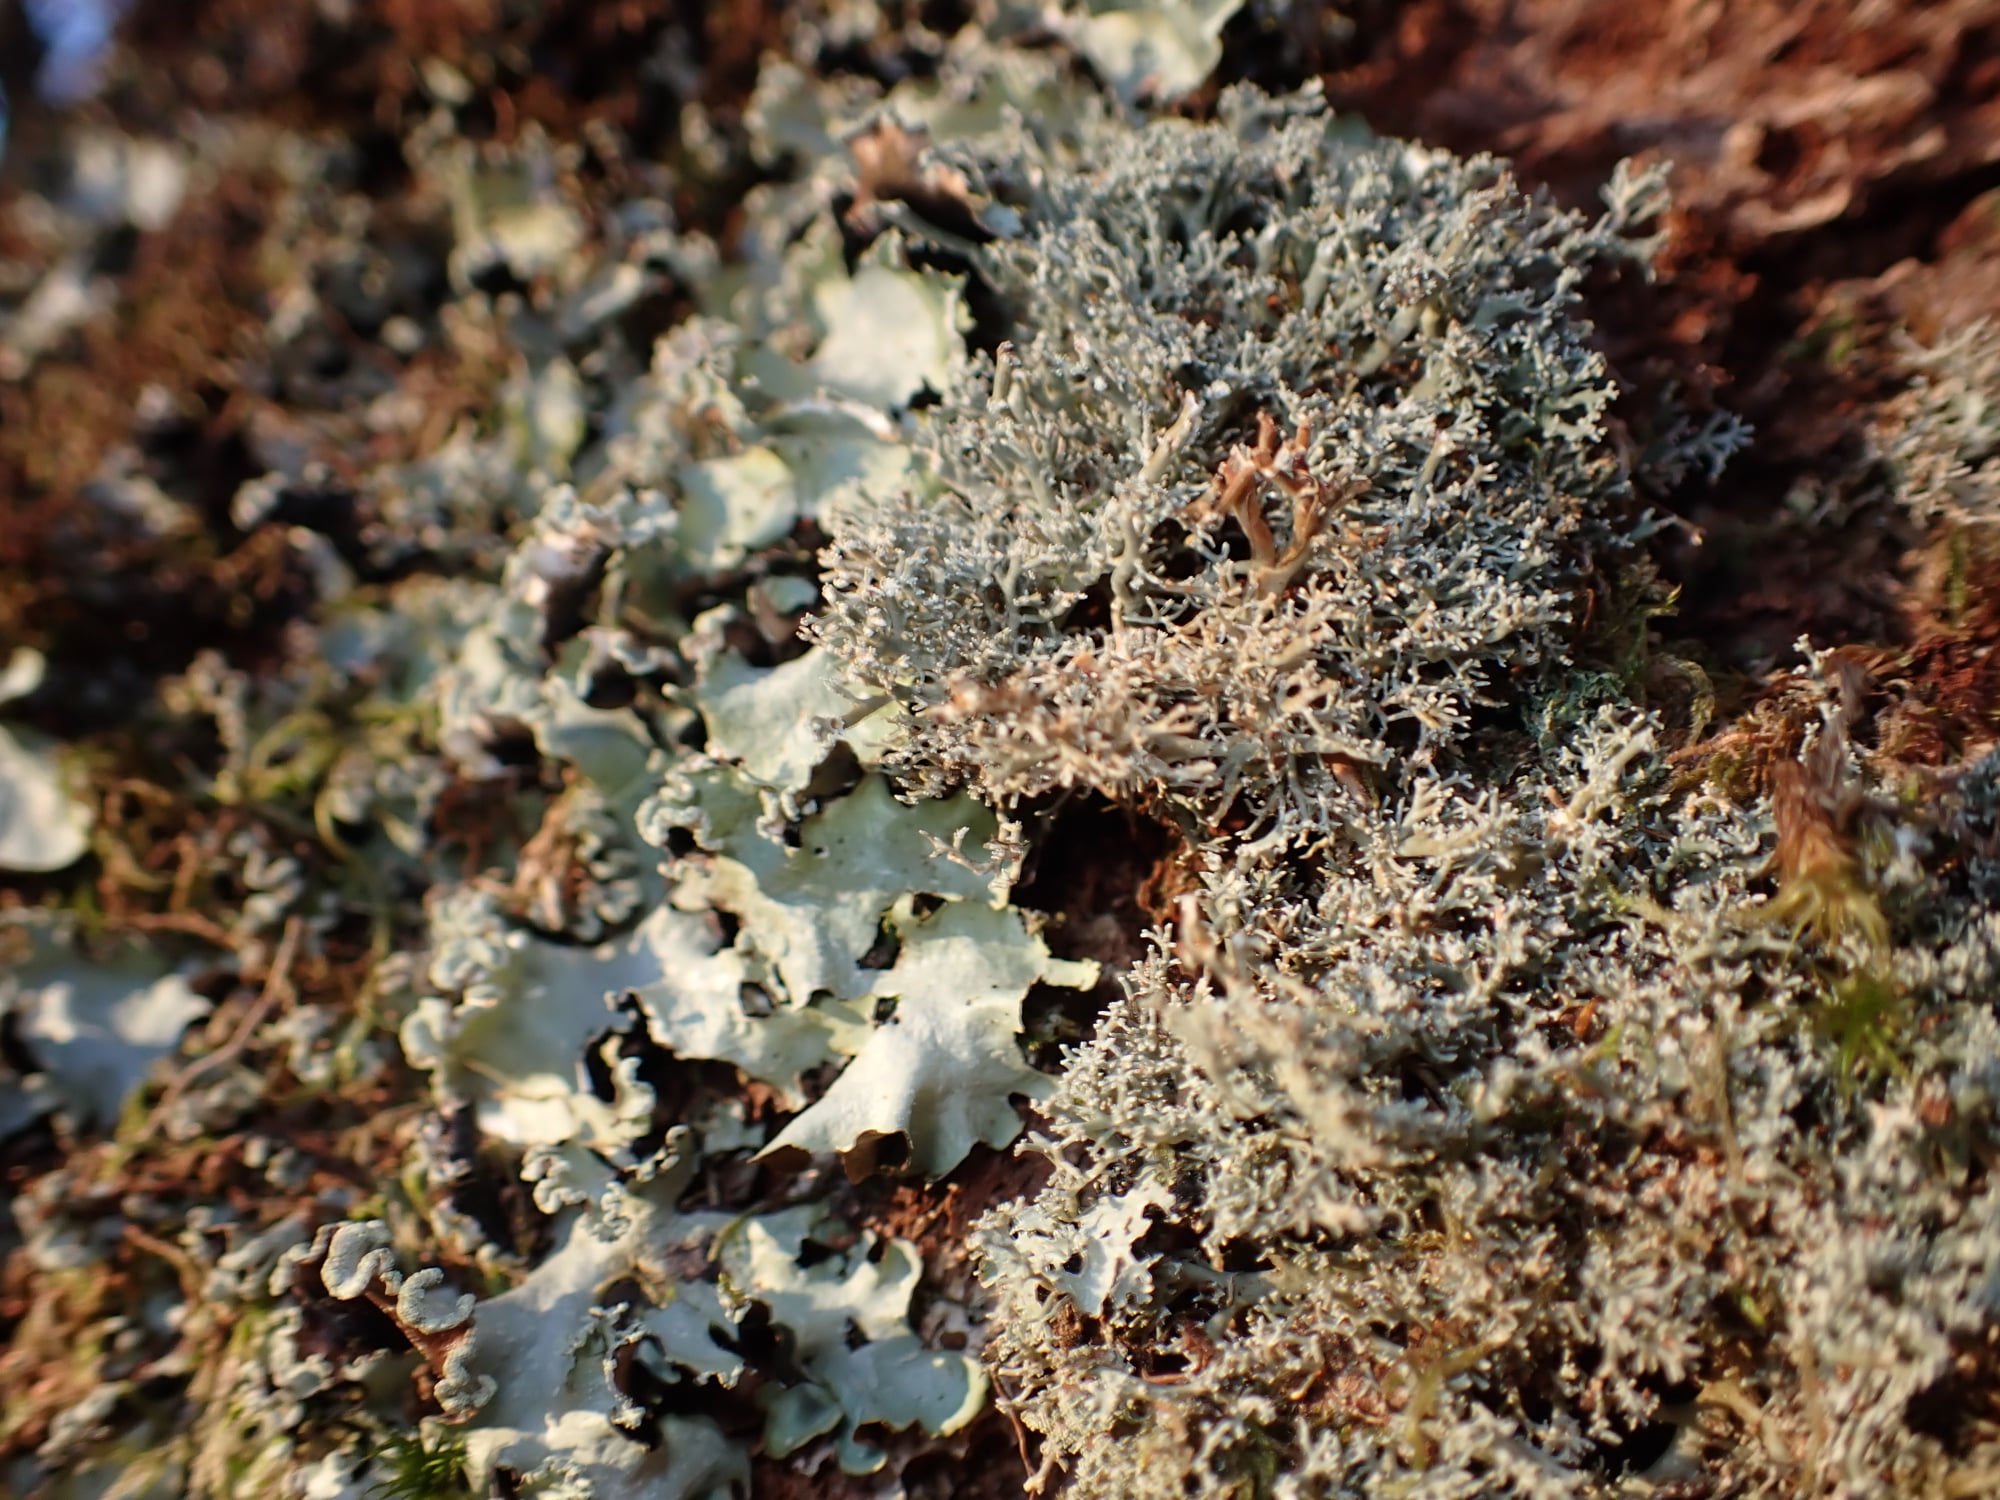 Cetrelia olivetorum and Sphaerophorus globosus